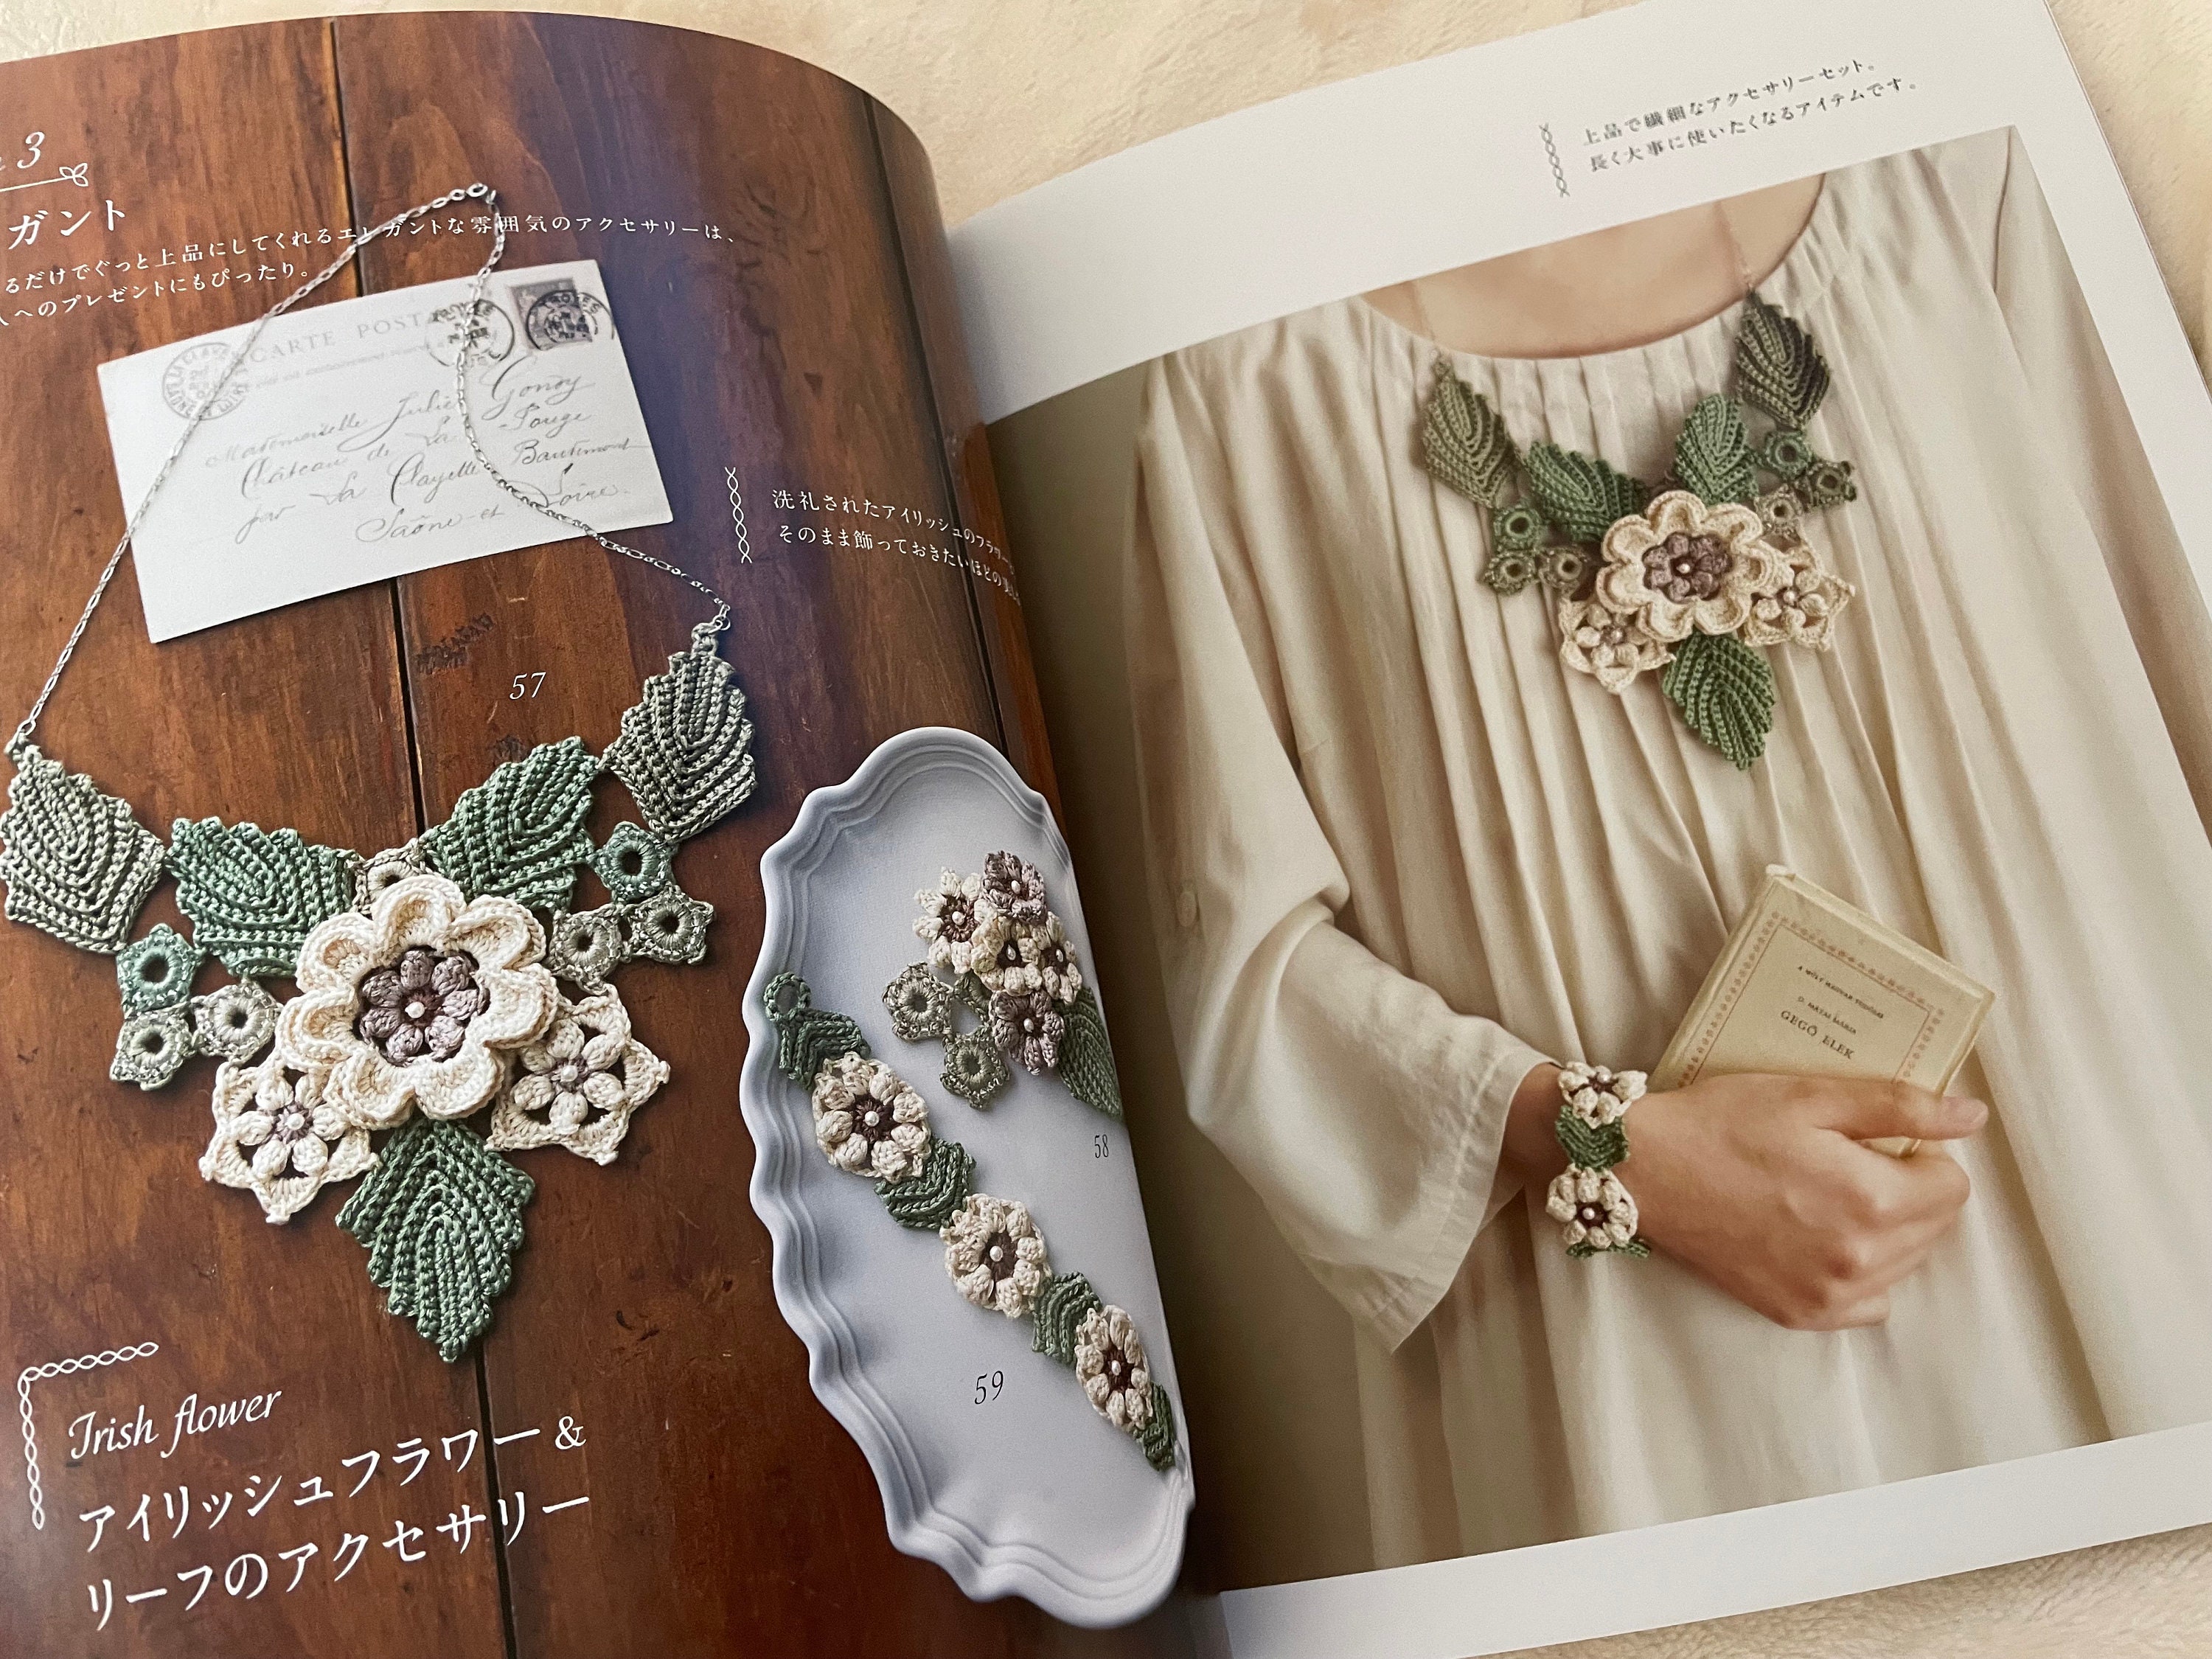 Crochet 3D Floral Motifs Japanese Craft Book NP -  Norway